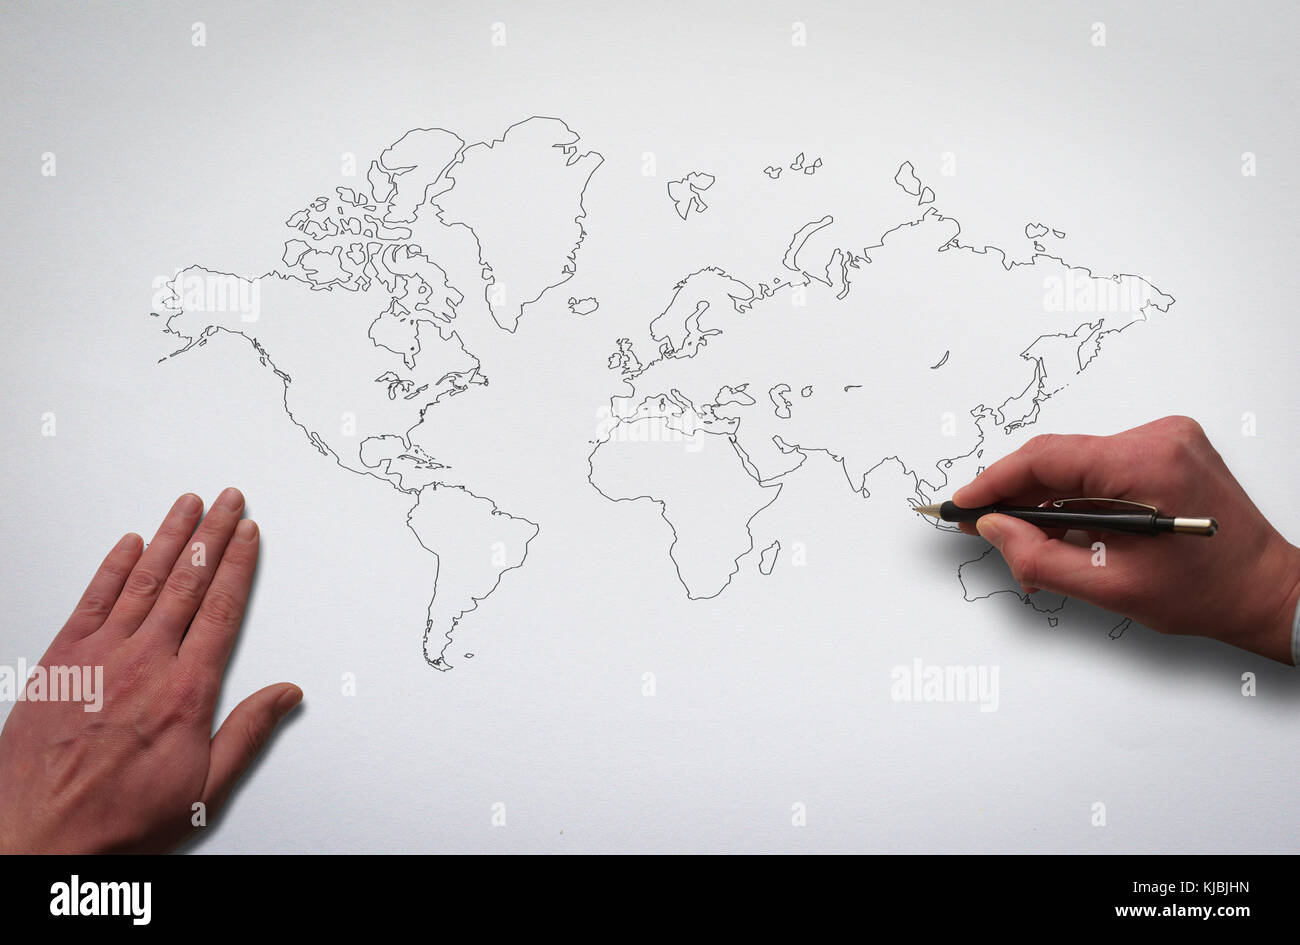 Hande Zeichnen Weltkarte Uberblick Weltkarte Auf Dem Alten Papier Textur Hintergrund Hande Zeichnen Kontur Der Globale Karte Mit Bleistift Stockfotografie Alamy